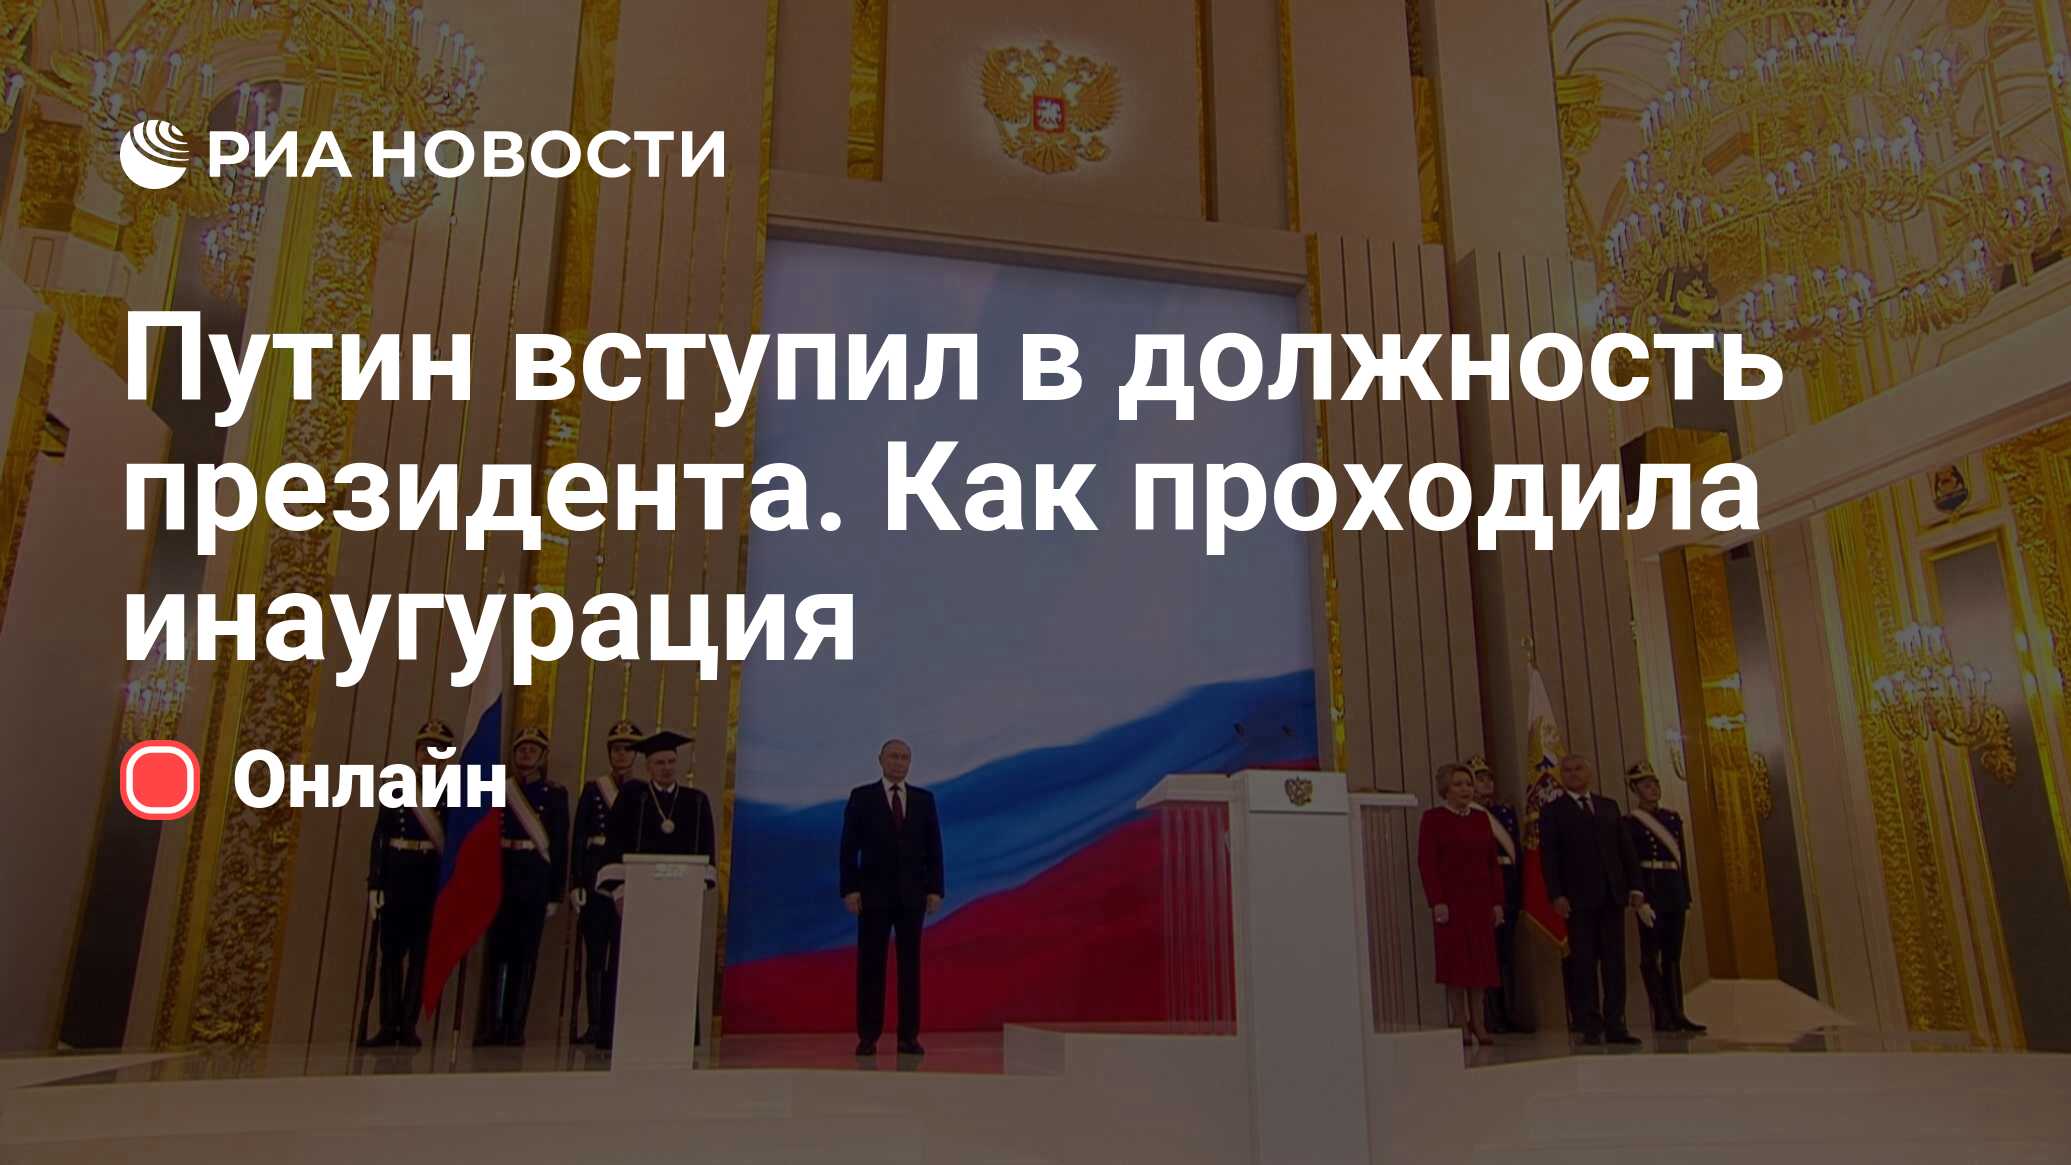 Путин вступил в должность президента. Как проходила инаугурация